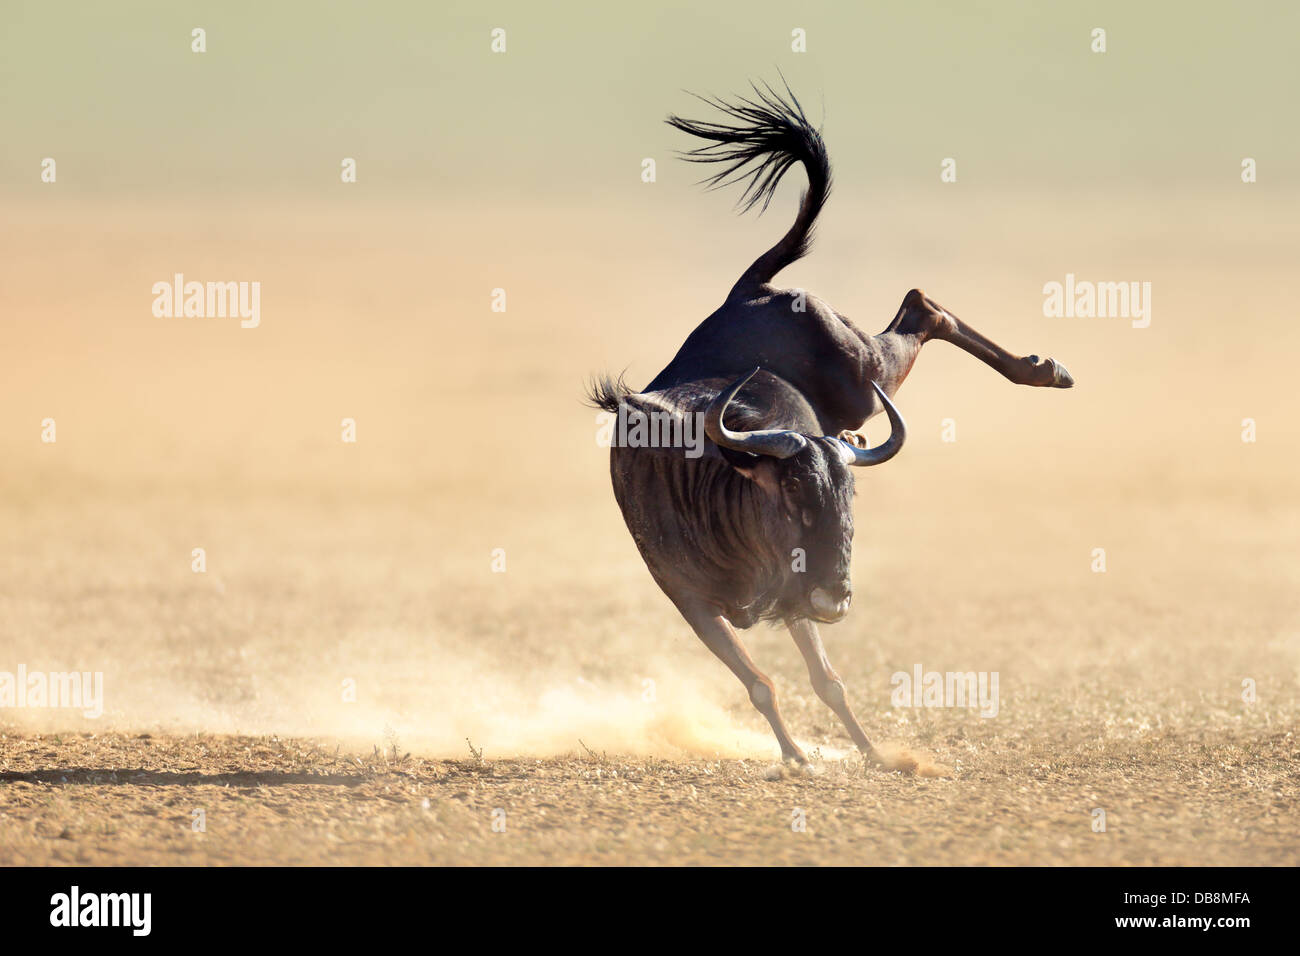 Streifengnu herumspringen spielerisch - Kalahari-Wüste - Südafrika Stockfoto